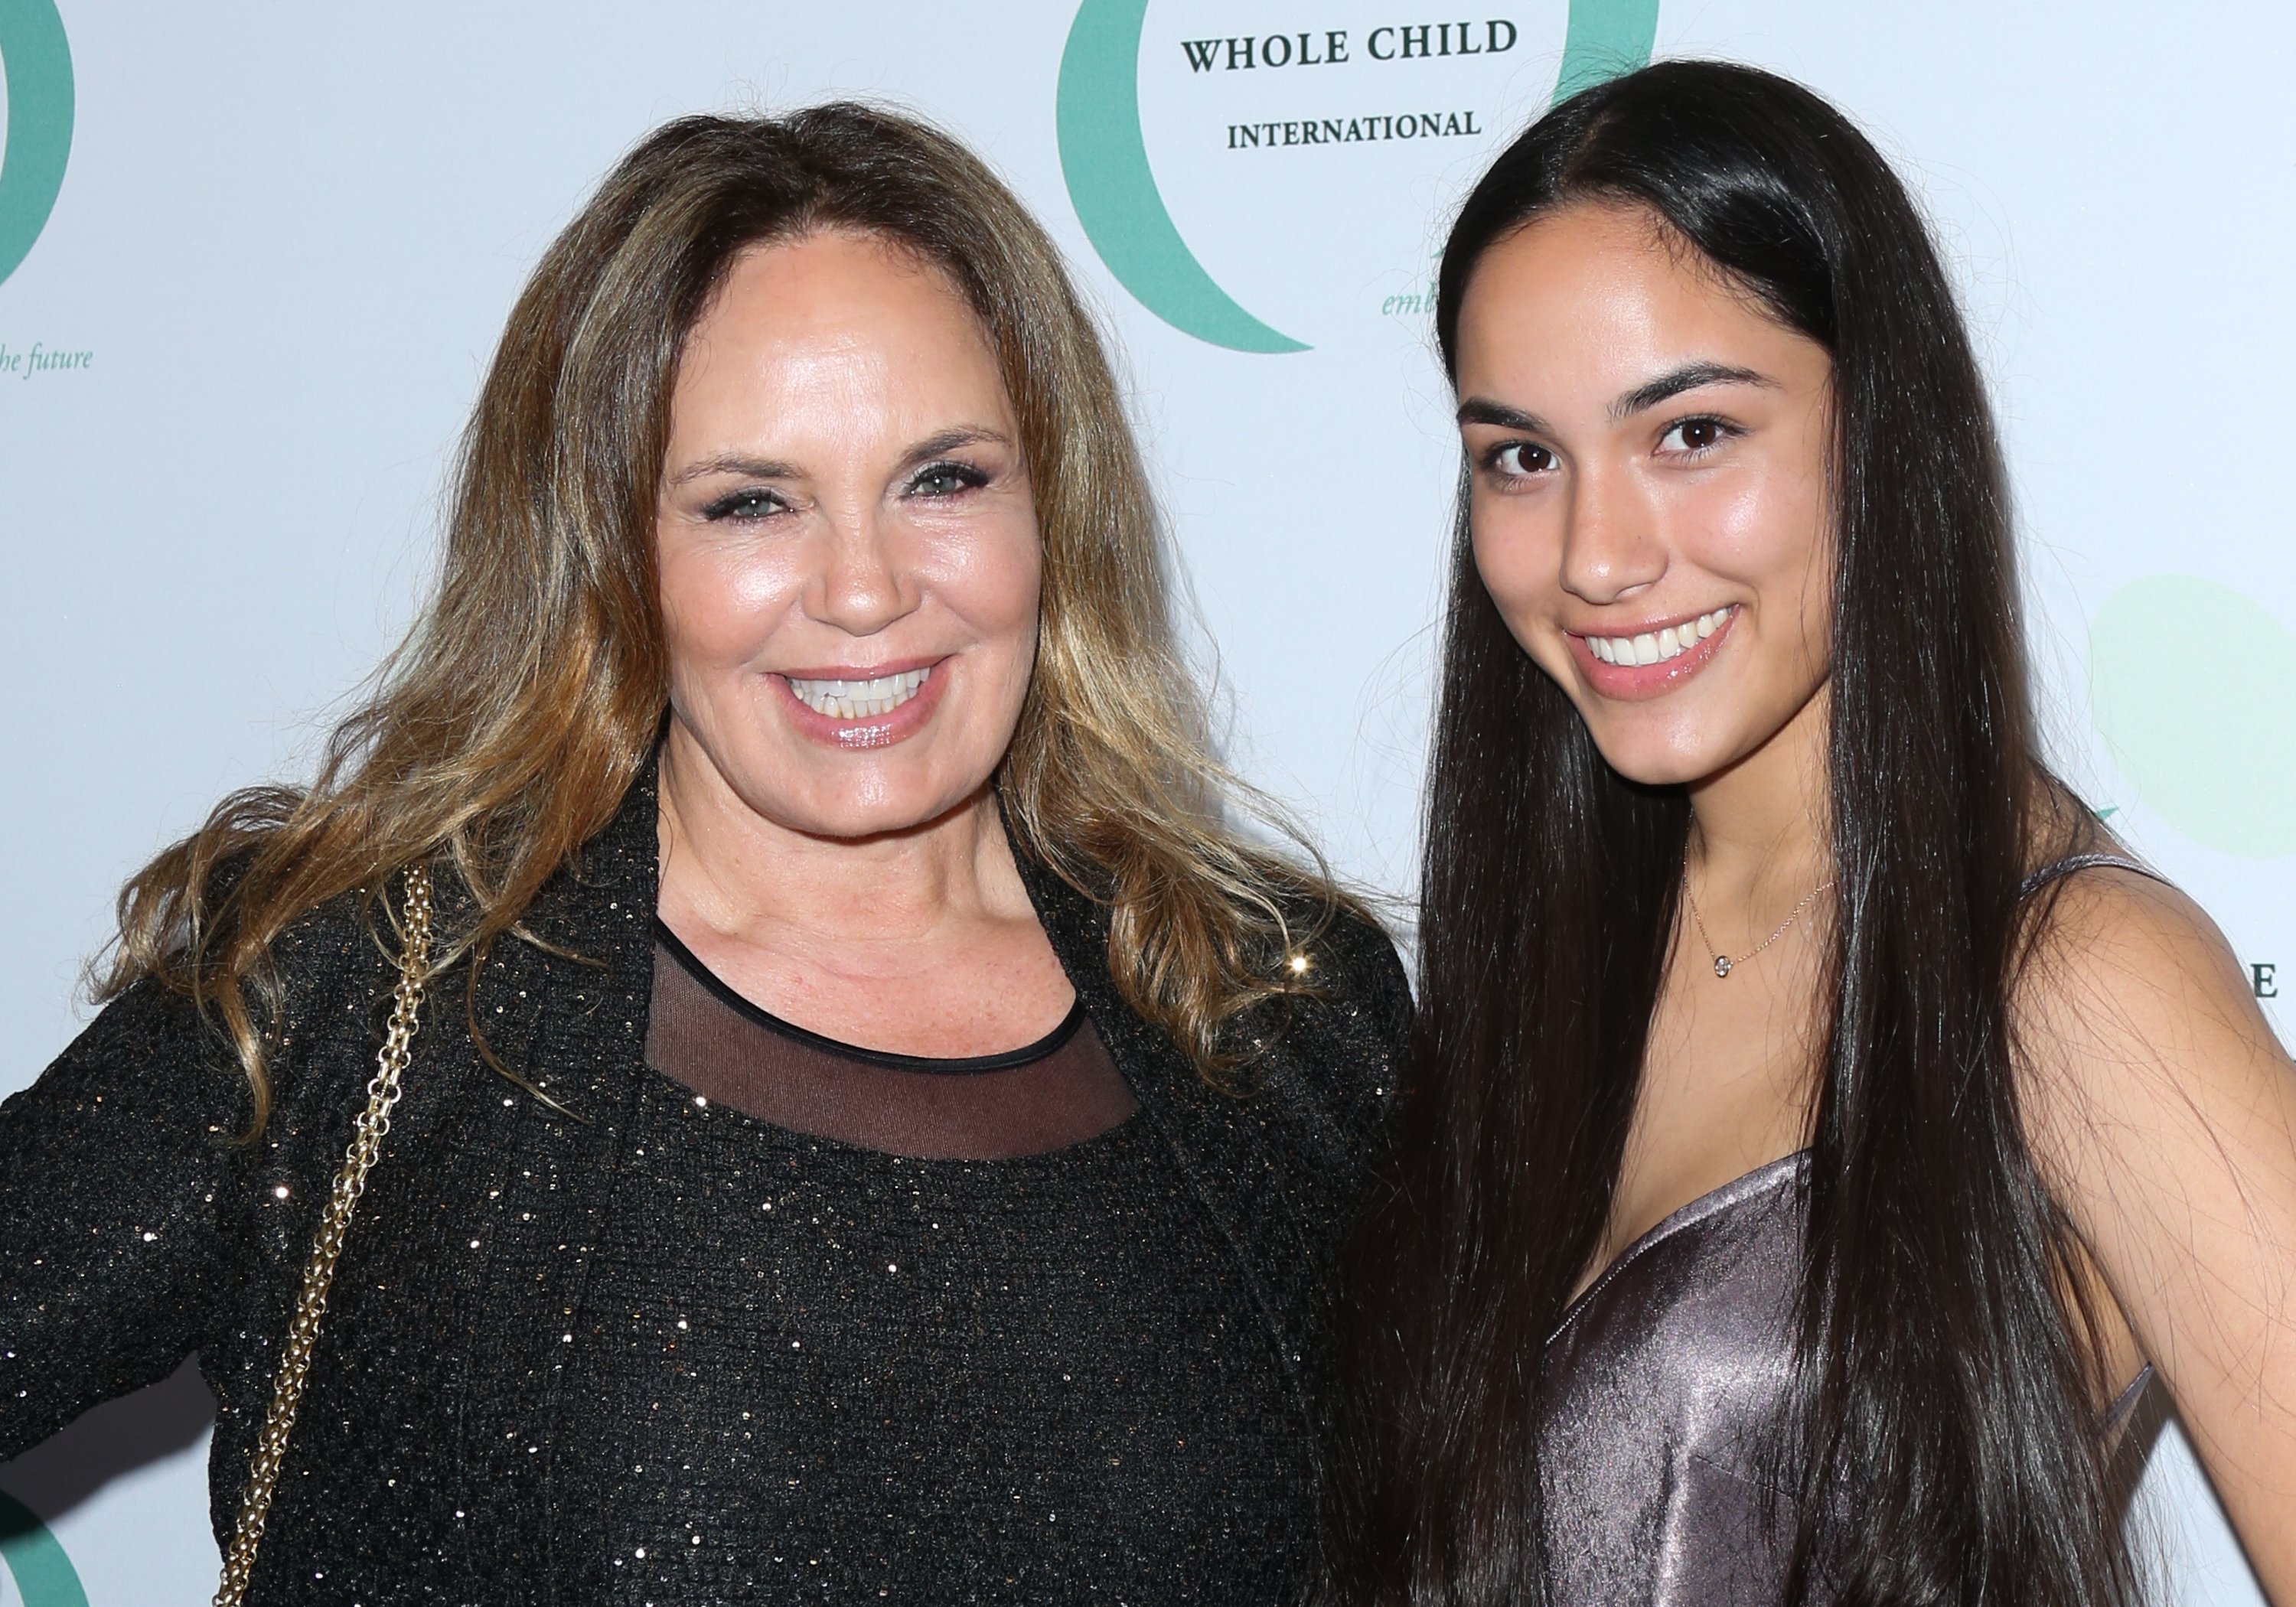 Catherine Bach y Laura Esmeralda López en la gala inaugural de Whole Child International el 26 de octubre de 2017 en Beverly Hills, California | Foto: Getty Images